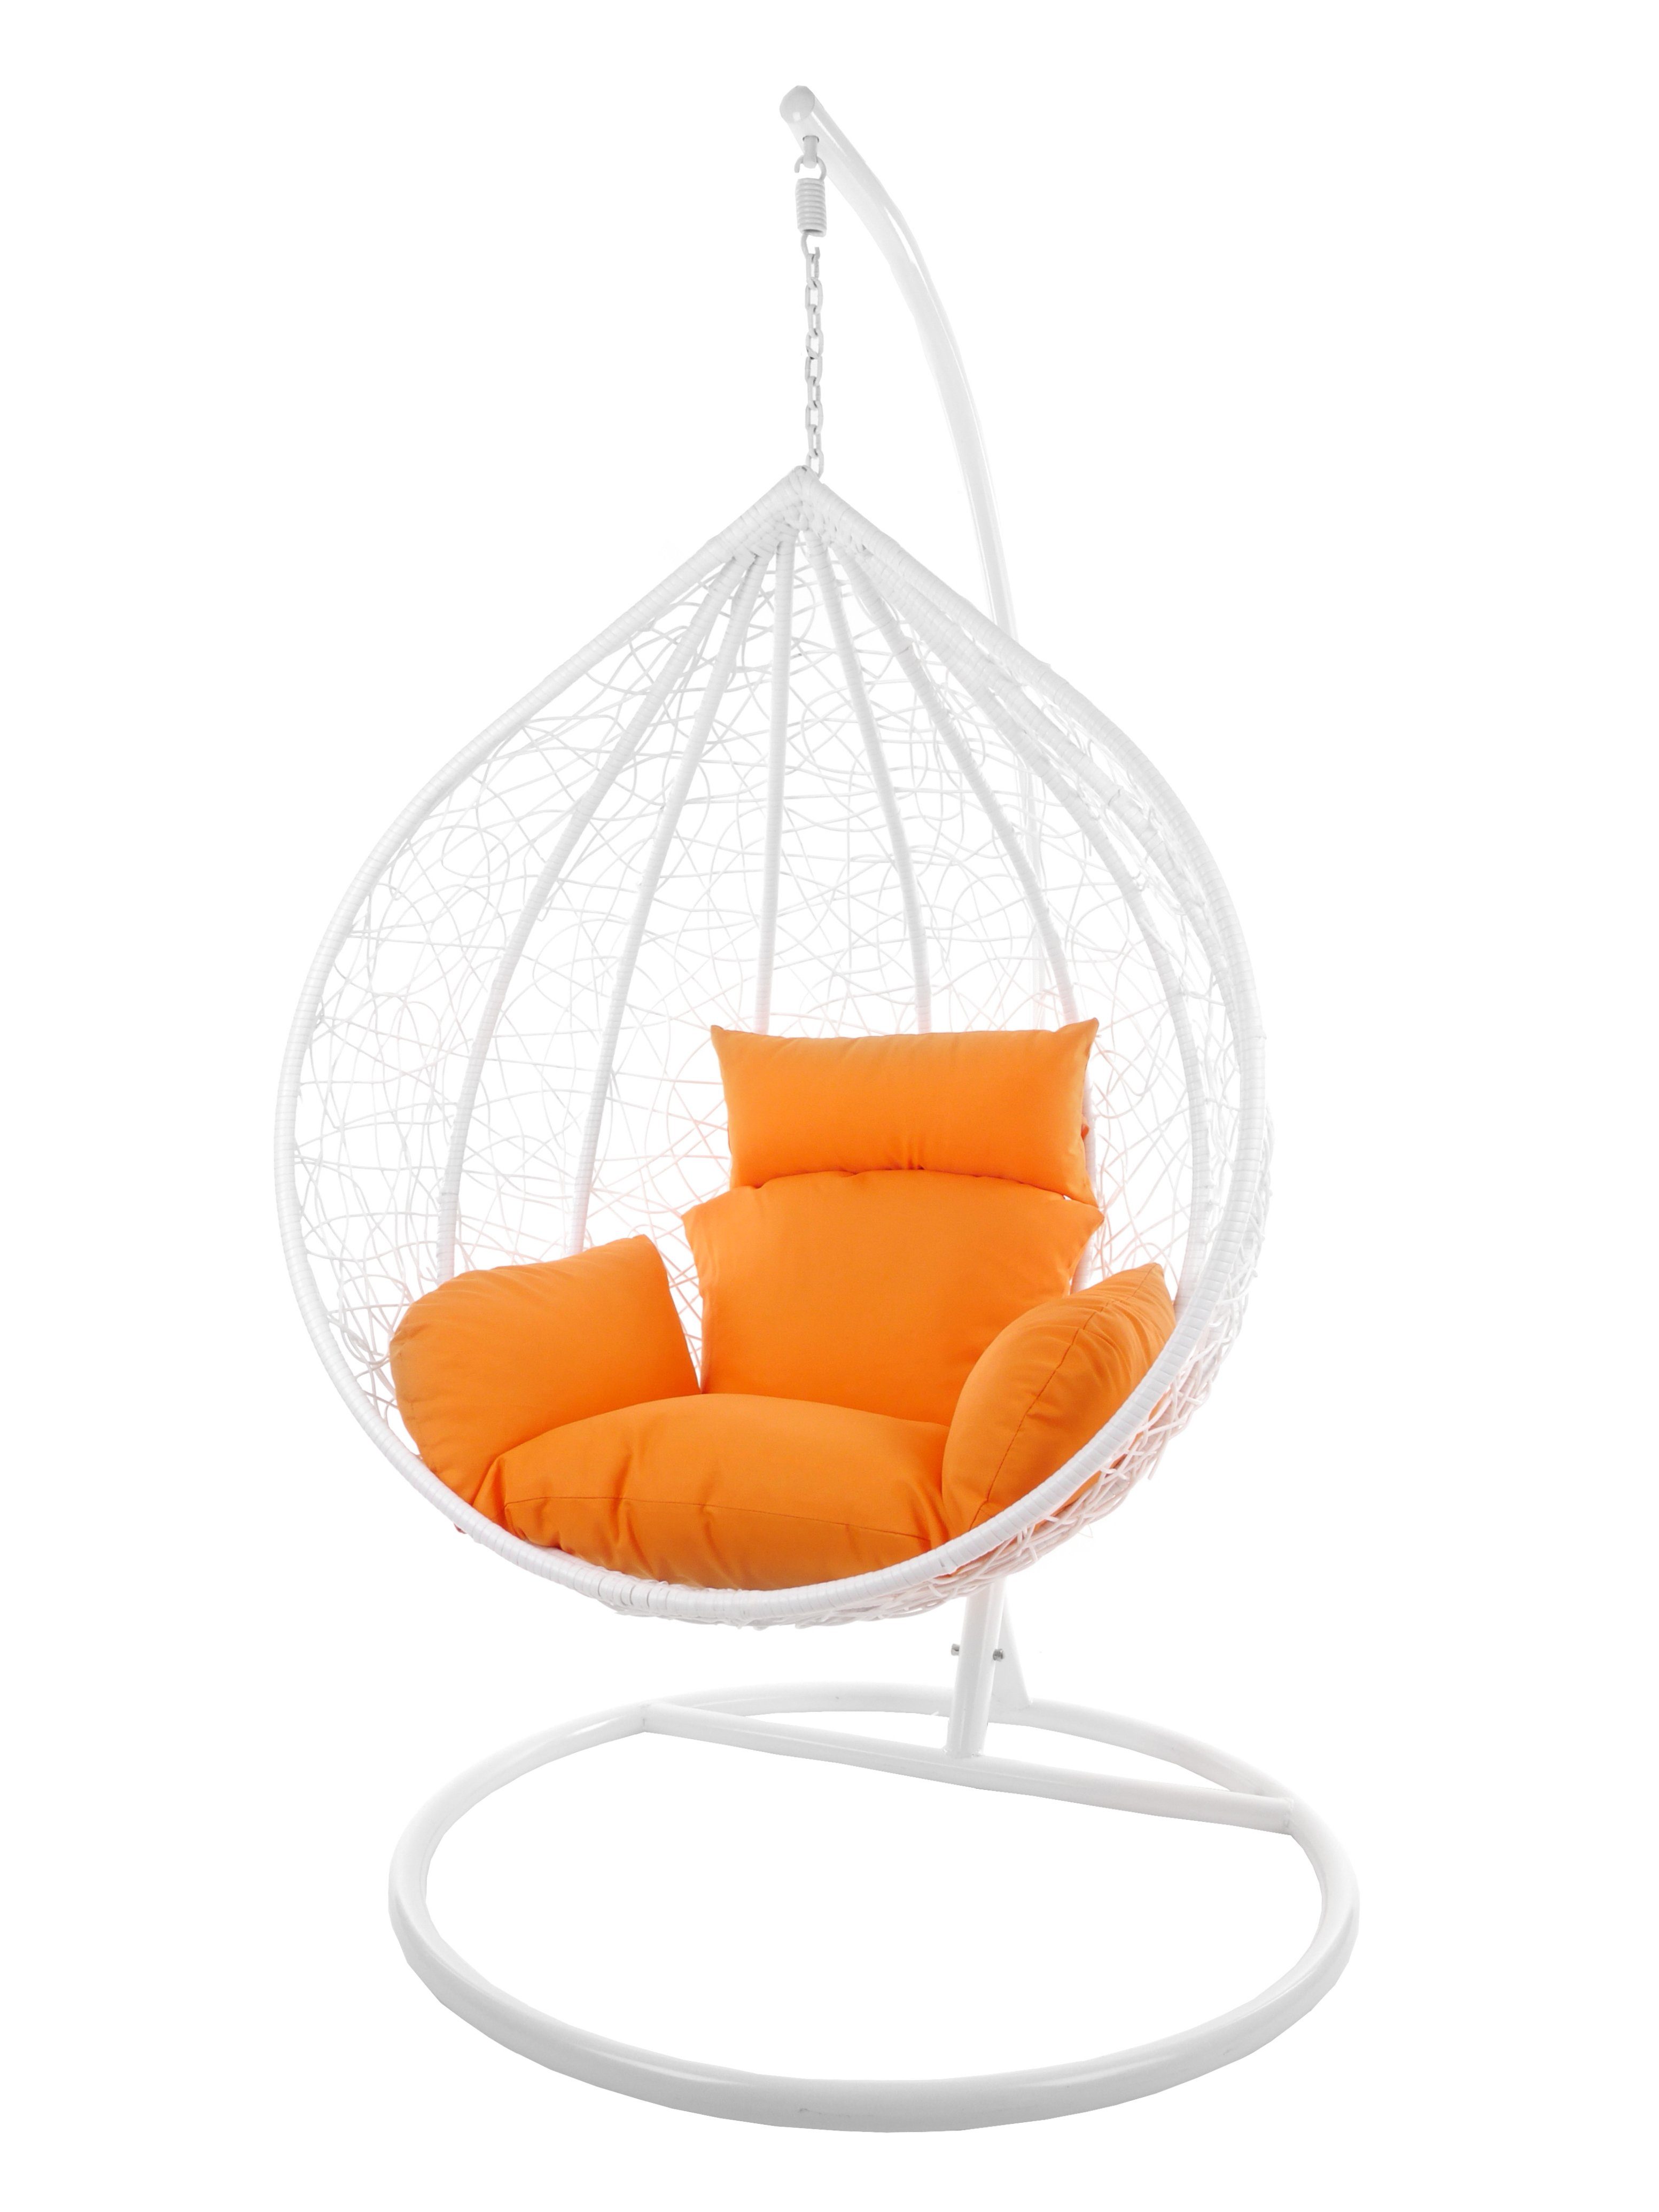 KIDEO Hängesessel Hängesessel MANACOR weiß, XXL Swing Chair, großer Hängesessel mit Gestell und Kissen, Loungemöbel, weiß orange (3030 tangerine)